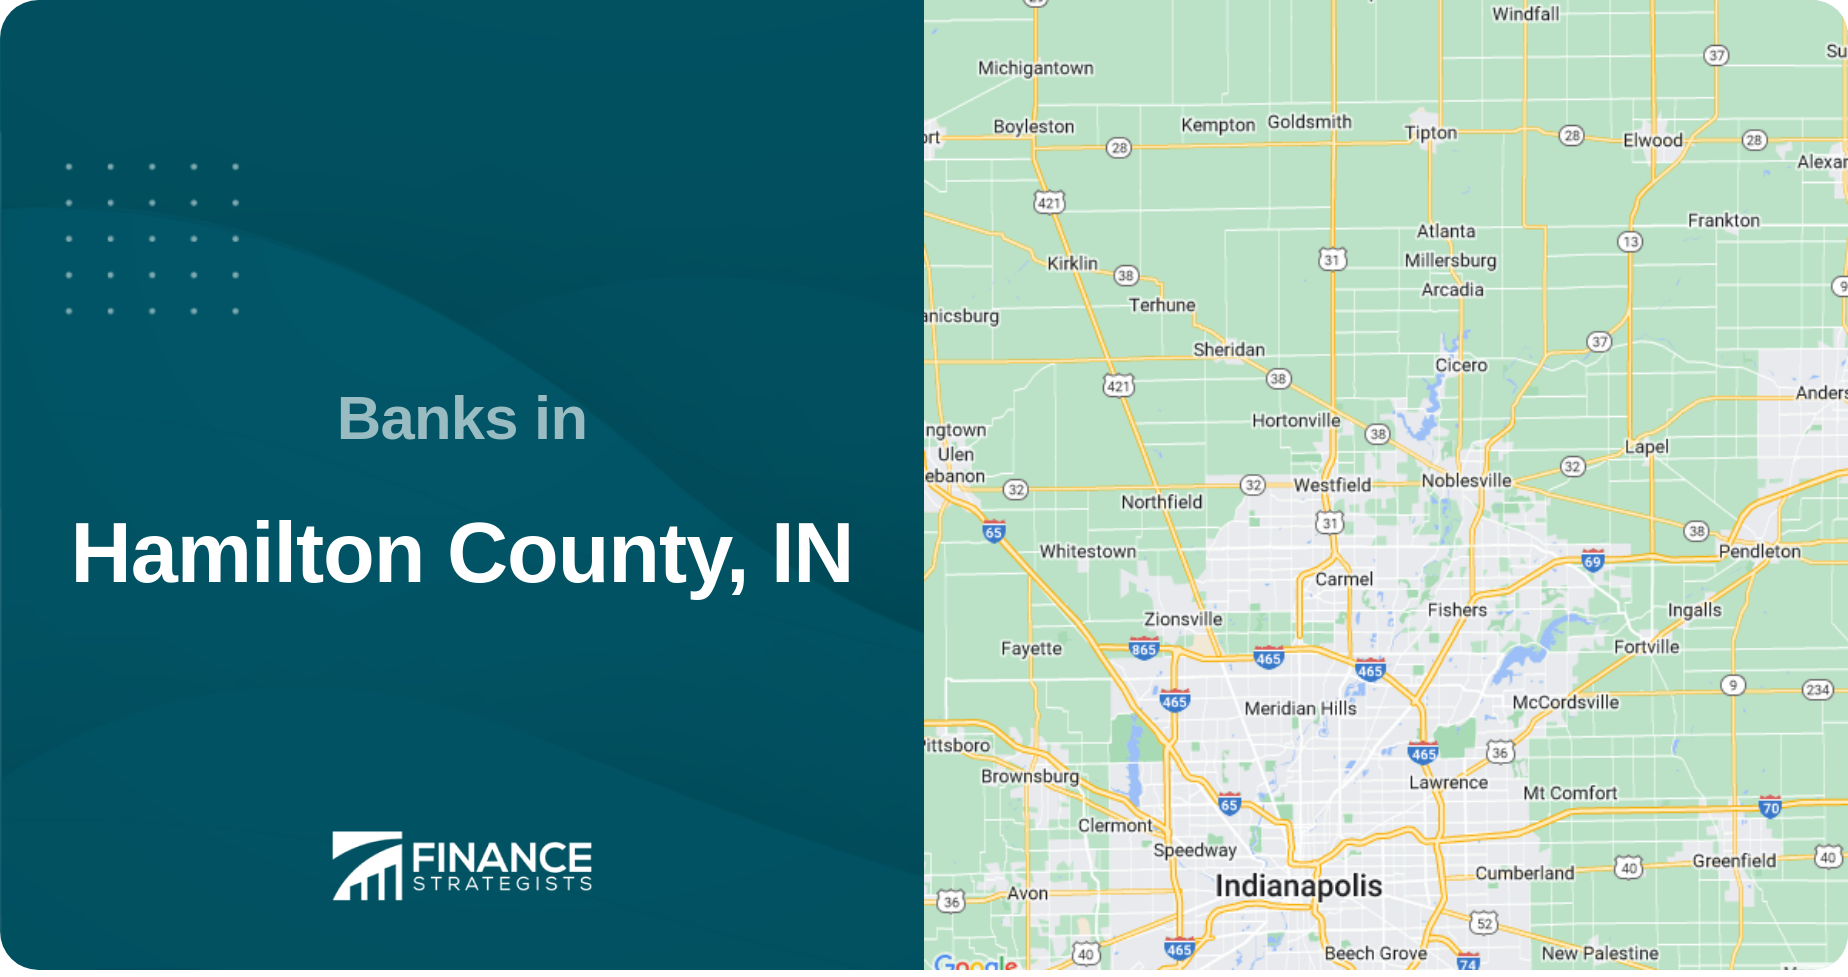 Banks in Hamilton County, IN